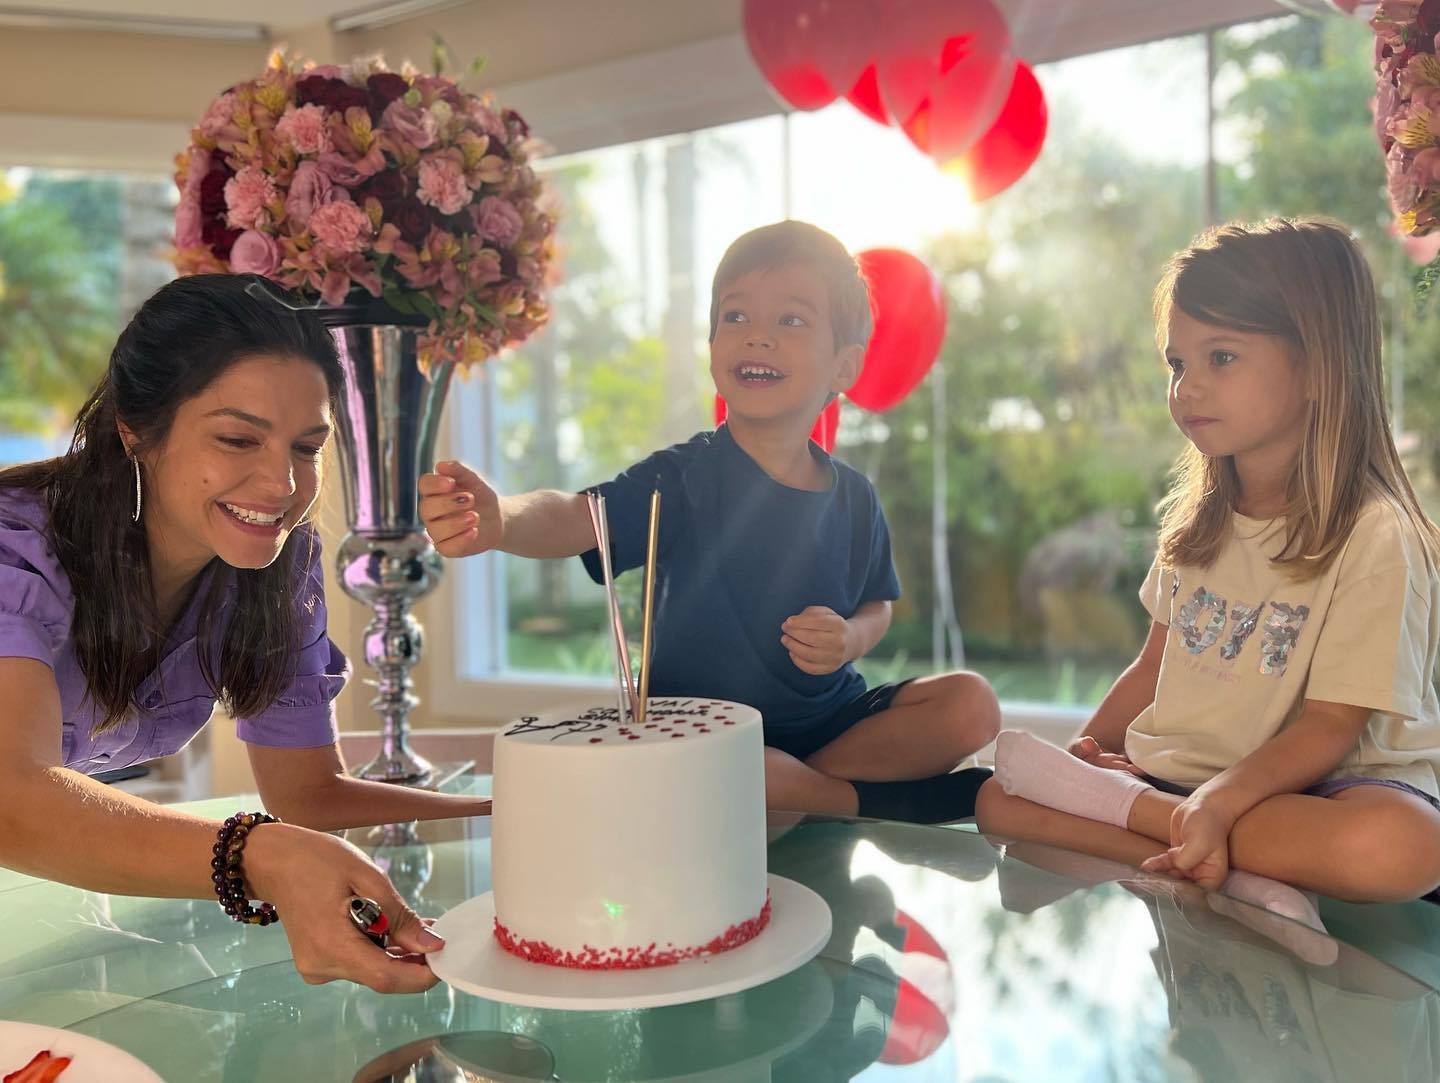 Tata Fersoza compartilha álbum de fotos de aniversário em família (Foto: Reprodução / Instagram)